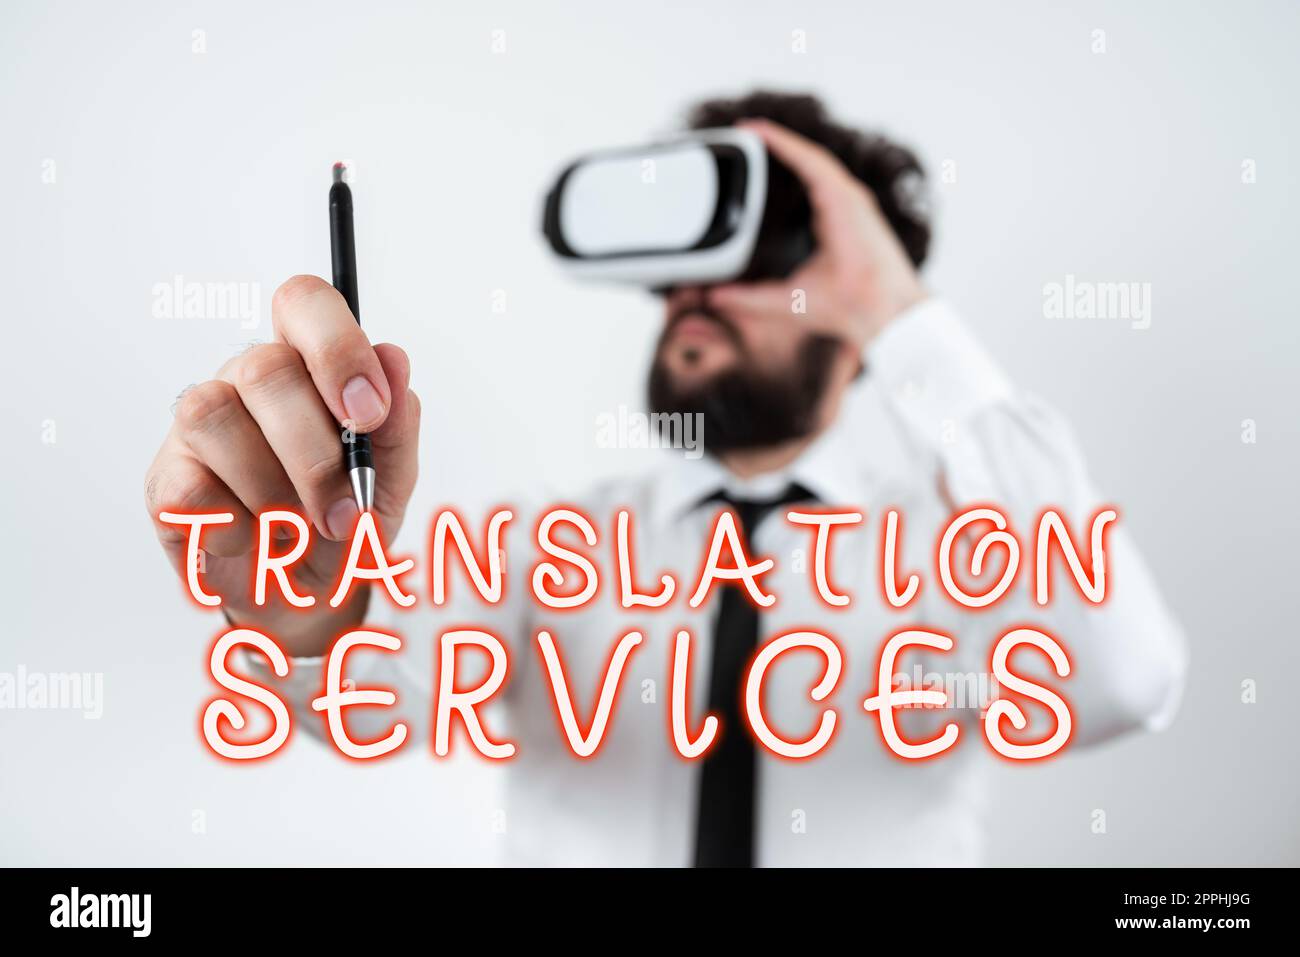 Texte montrant inspiration Translation Services. Organisation de présentation commerciale qui permet aux gens de traduire leur discours Banque D'Images